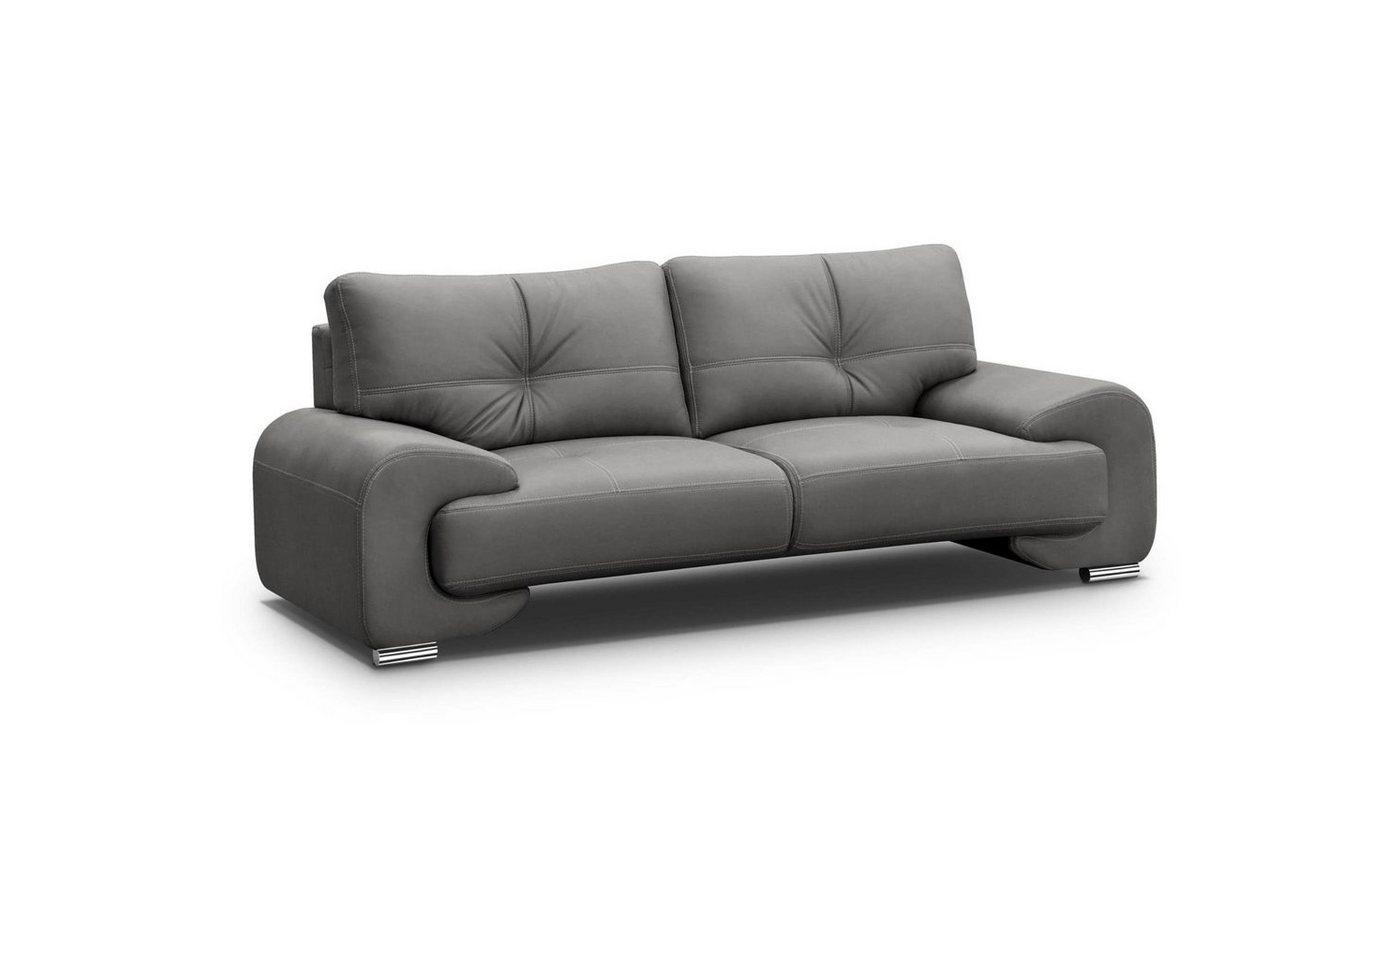 Beautysofa 3-Sitzer Maxime lux, 3-Sitzer Sofa im modernes Design, mit Wellenunterfederung, mit dekorativen Nähten, Kunstleder, Dreisitzer von Beautysofa